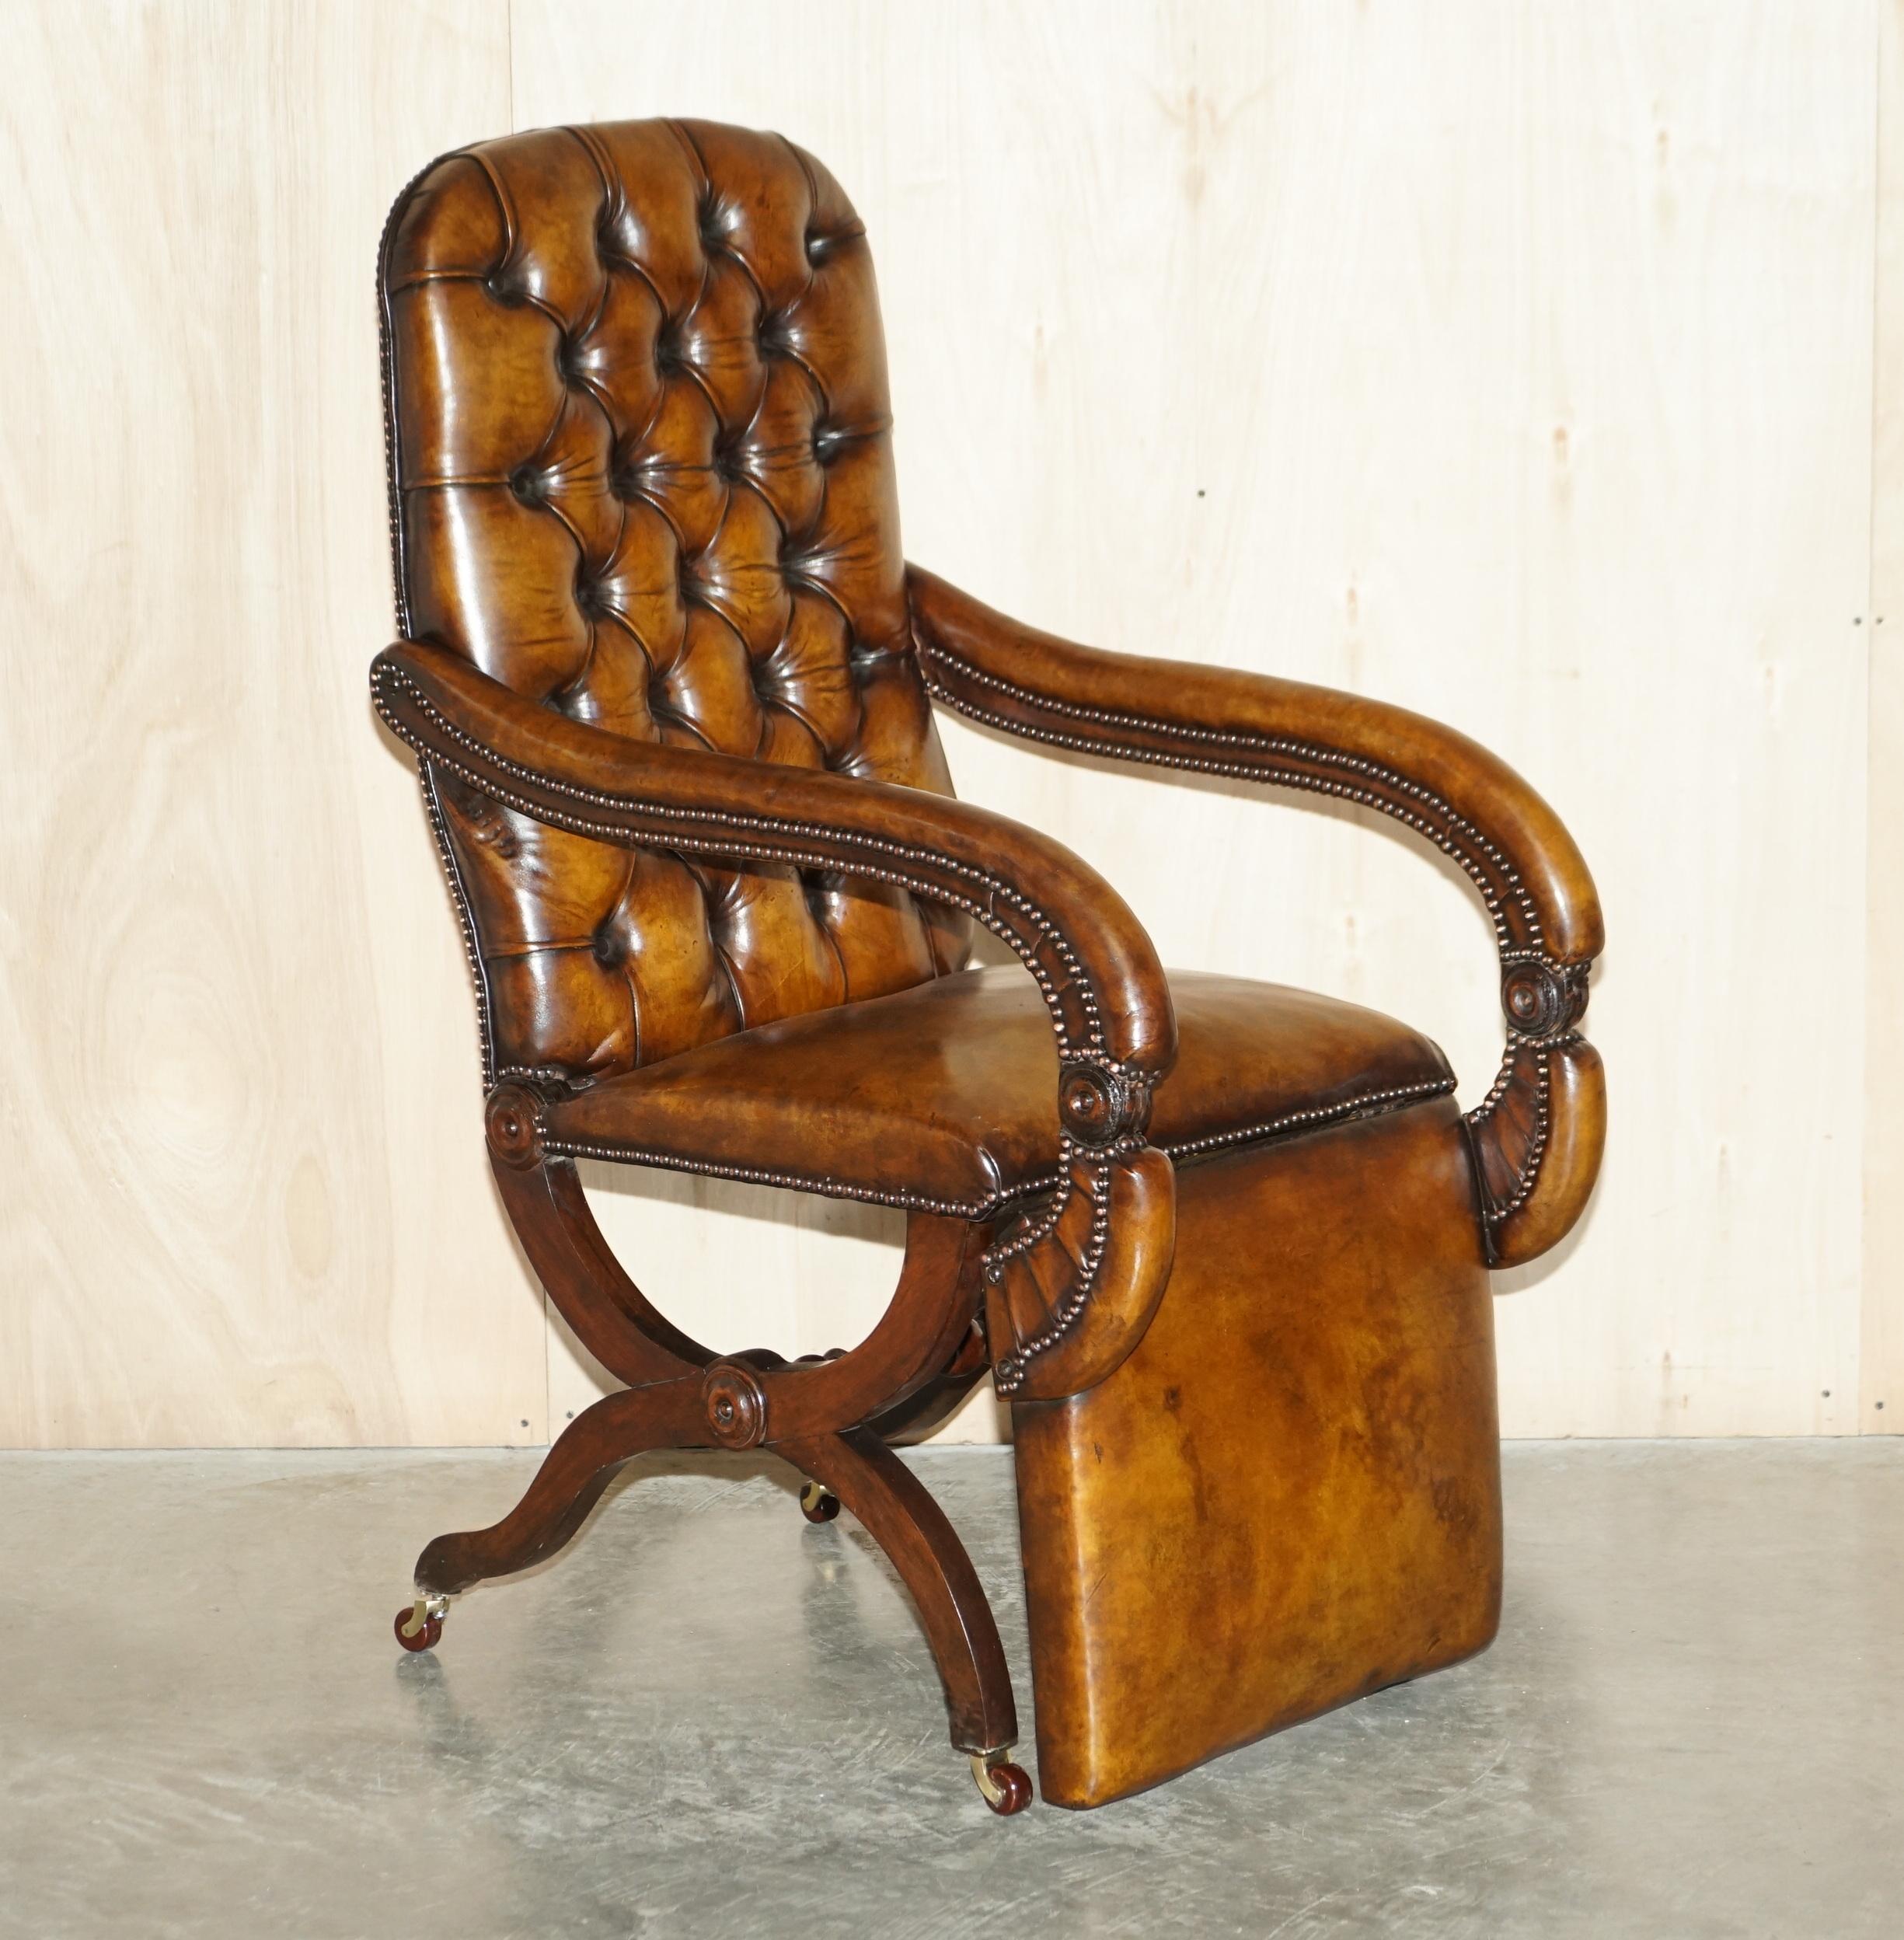 Wir freuen uns, dieses exquisite Original X Framed circa 1810-1820 Regency Reclining braunem Leder Chesterfield getuftet Sessel, die vollständig restauriert wurde zum Verkauf anbieten 

Was für ein Stuhl! Ich habe noch nie einen solchen gesehen, der